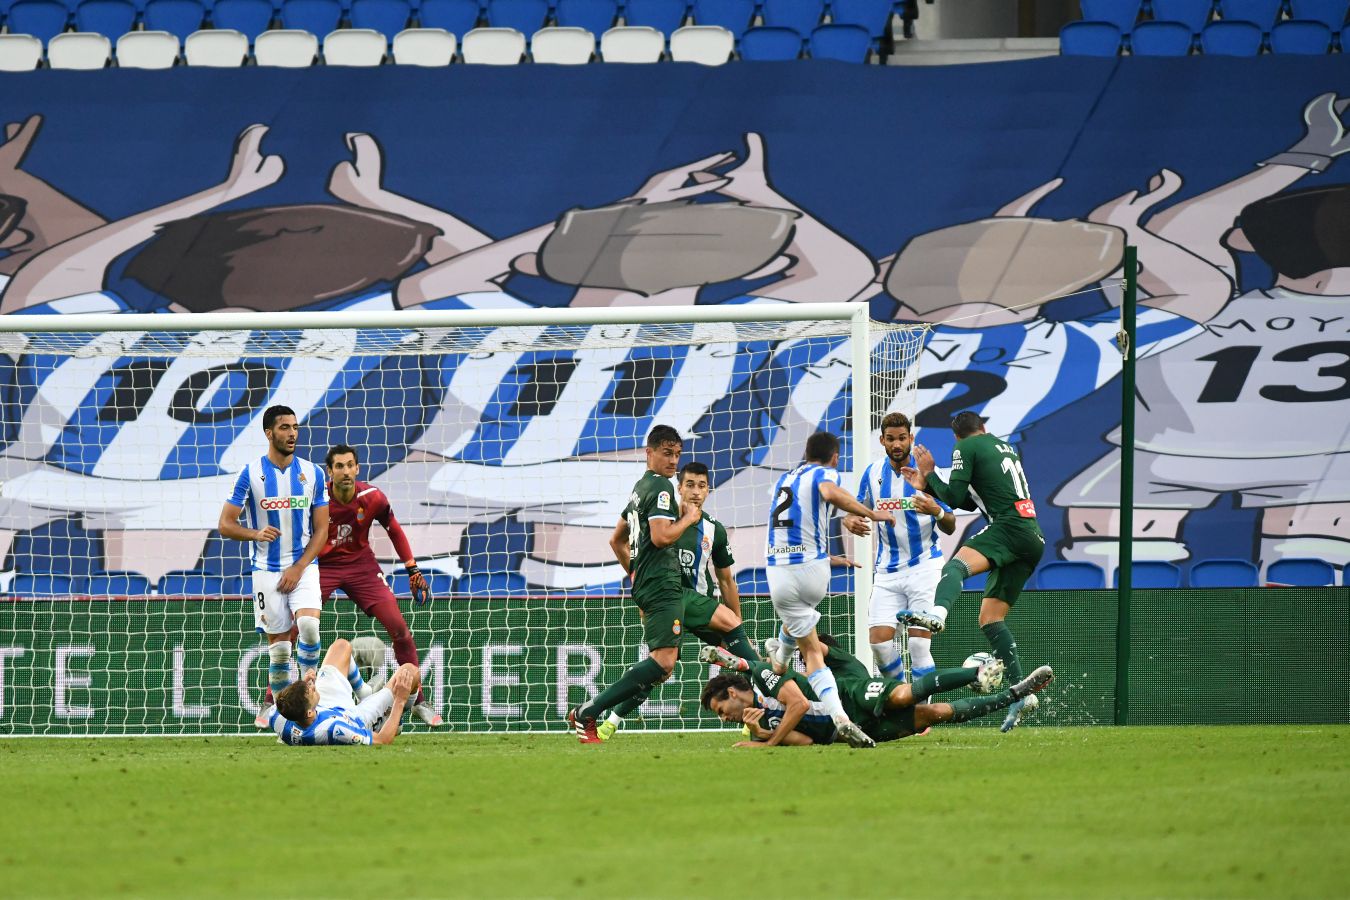 La Real Sociedad ha ganado su primer partido tras la vuelta de la Liga después de remontar a un Espanyol que se había adelantado en el marcador.